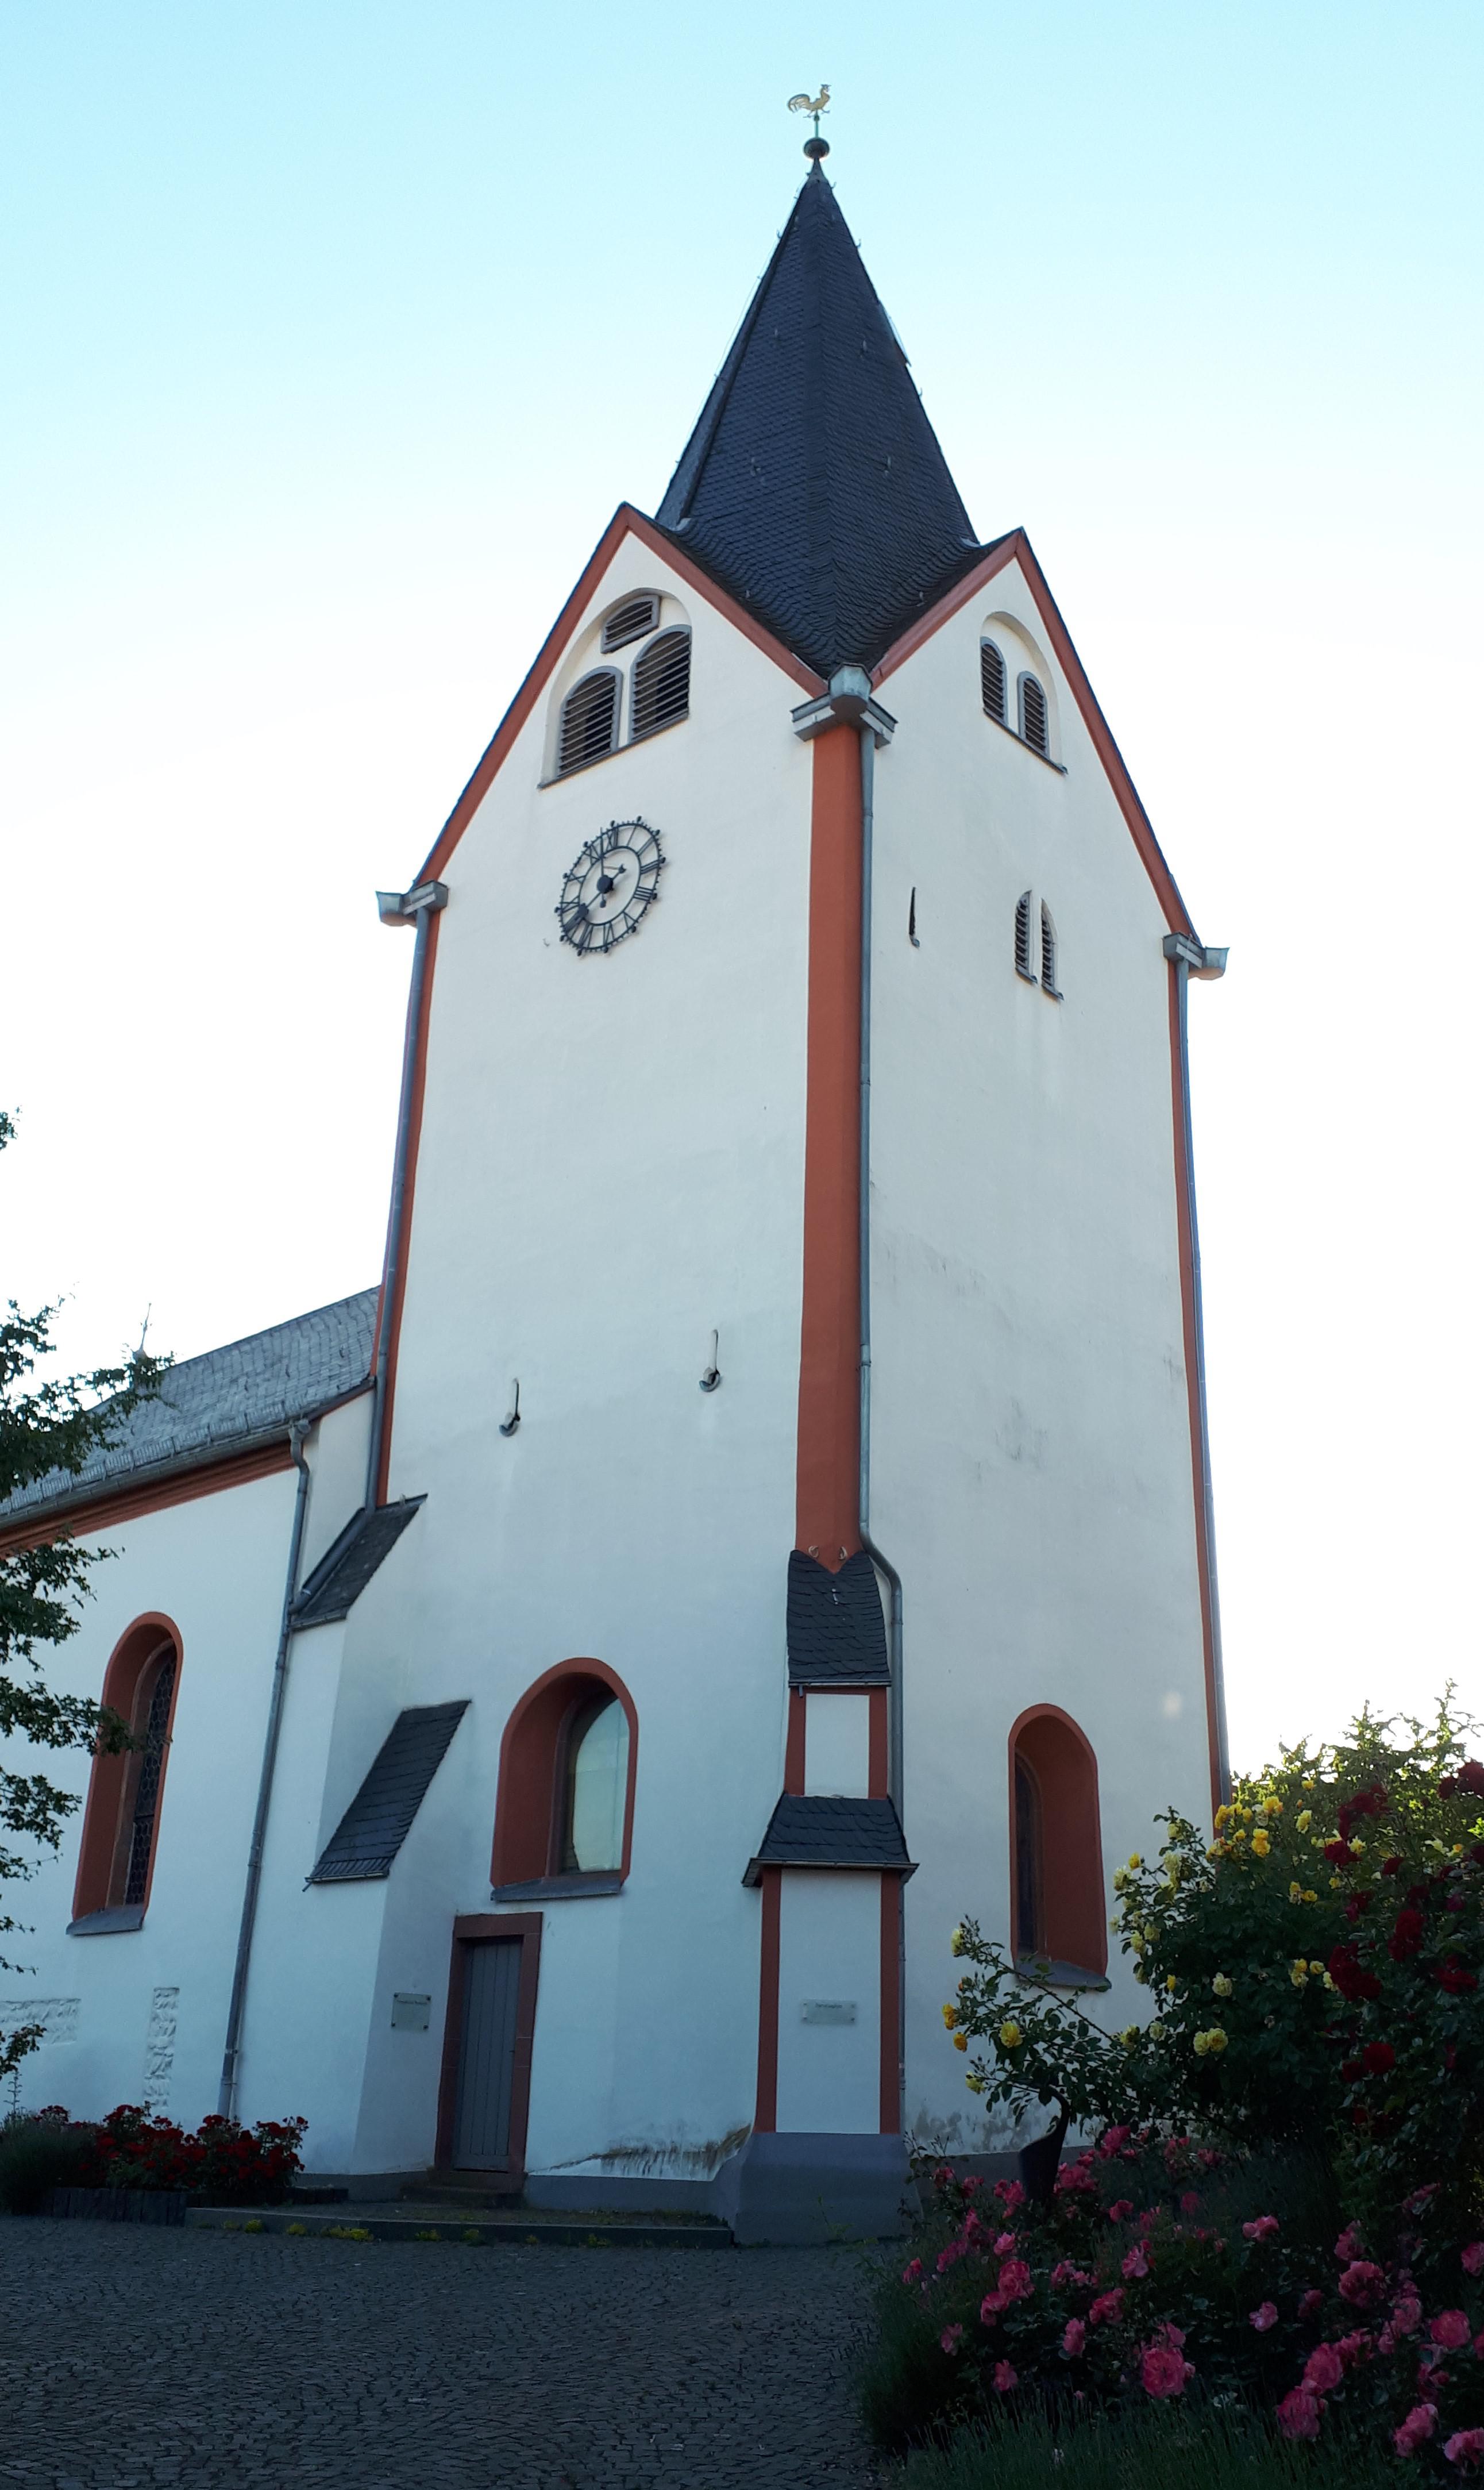 Bilder Evangelische Kirche Kloppenheim - Evangelische Bodelschwingh-Kirchengemeinde Wiesbaden-Kloppenheim/Hessloch